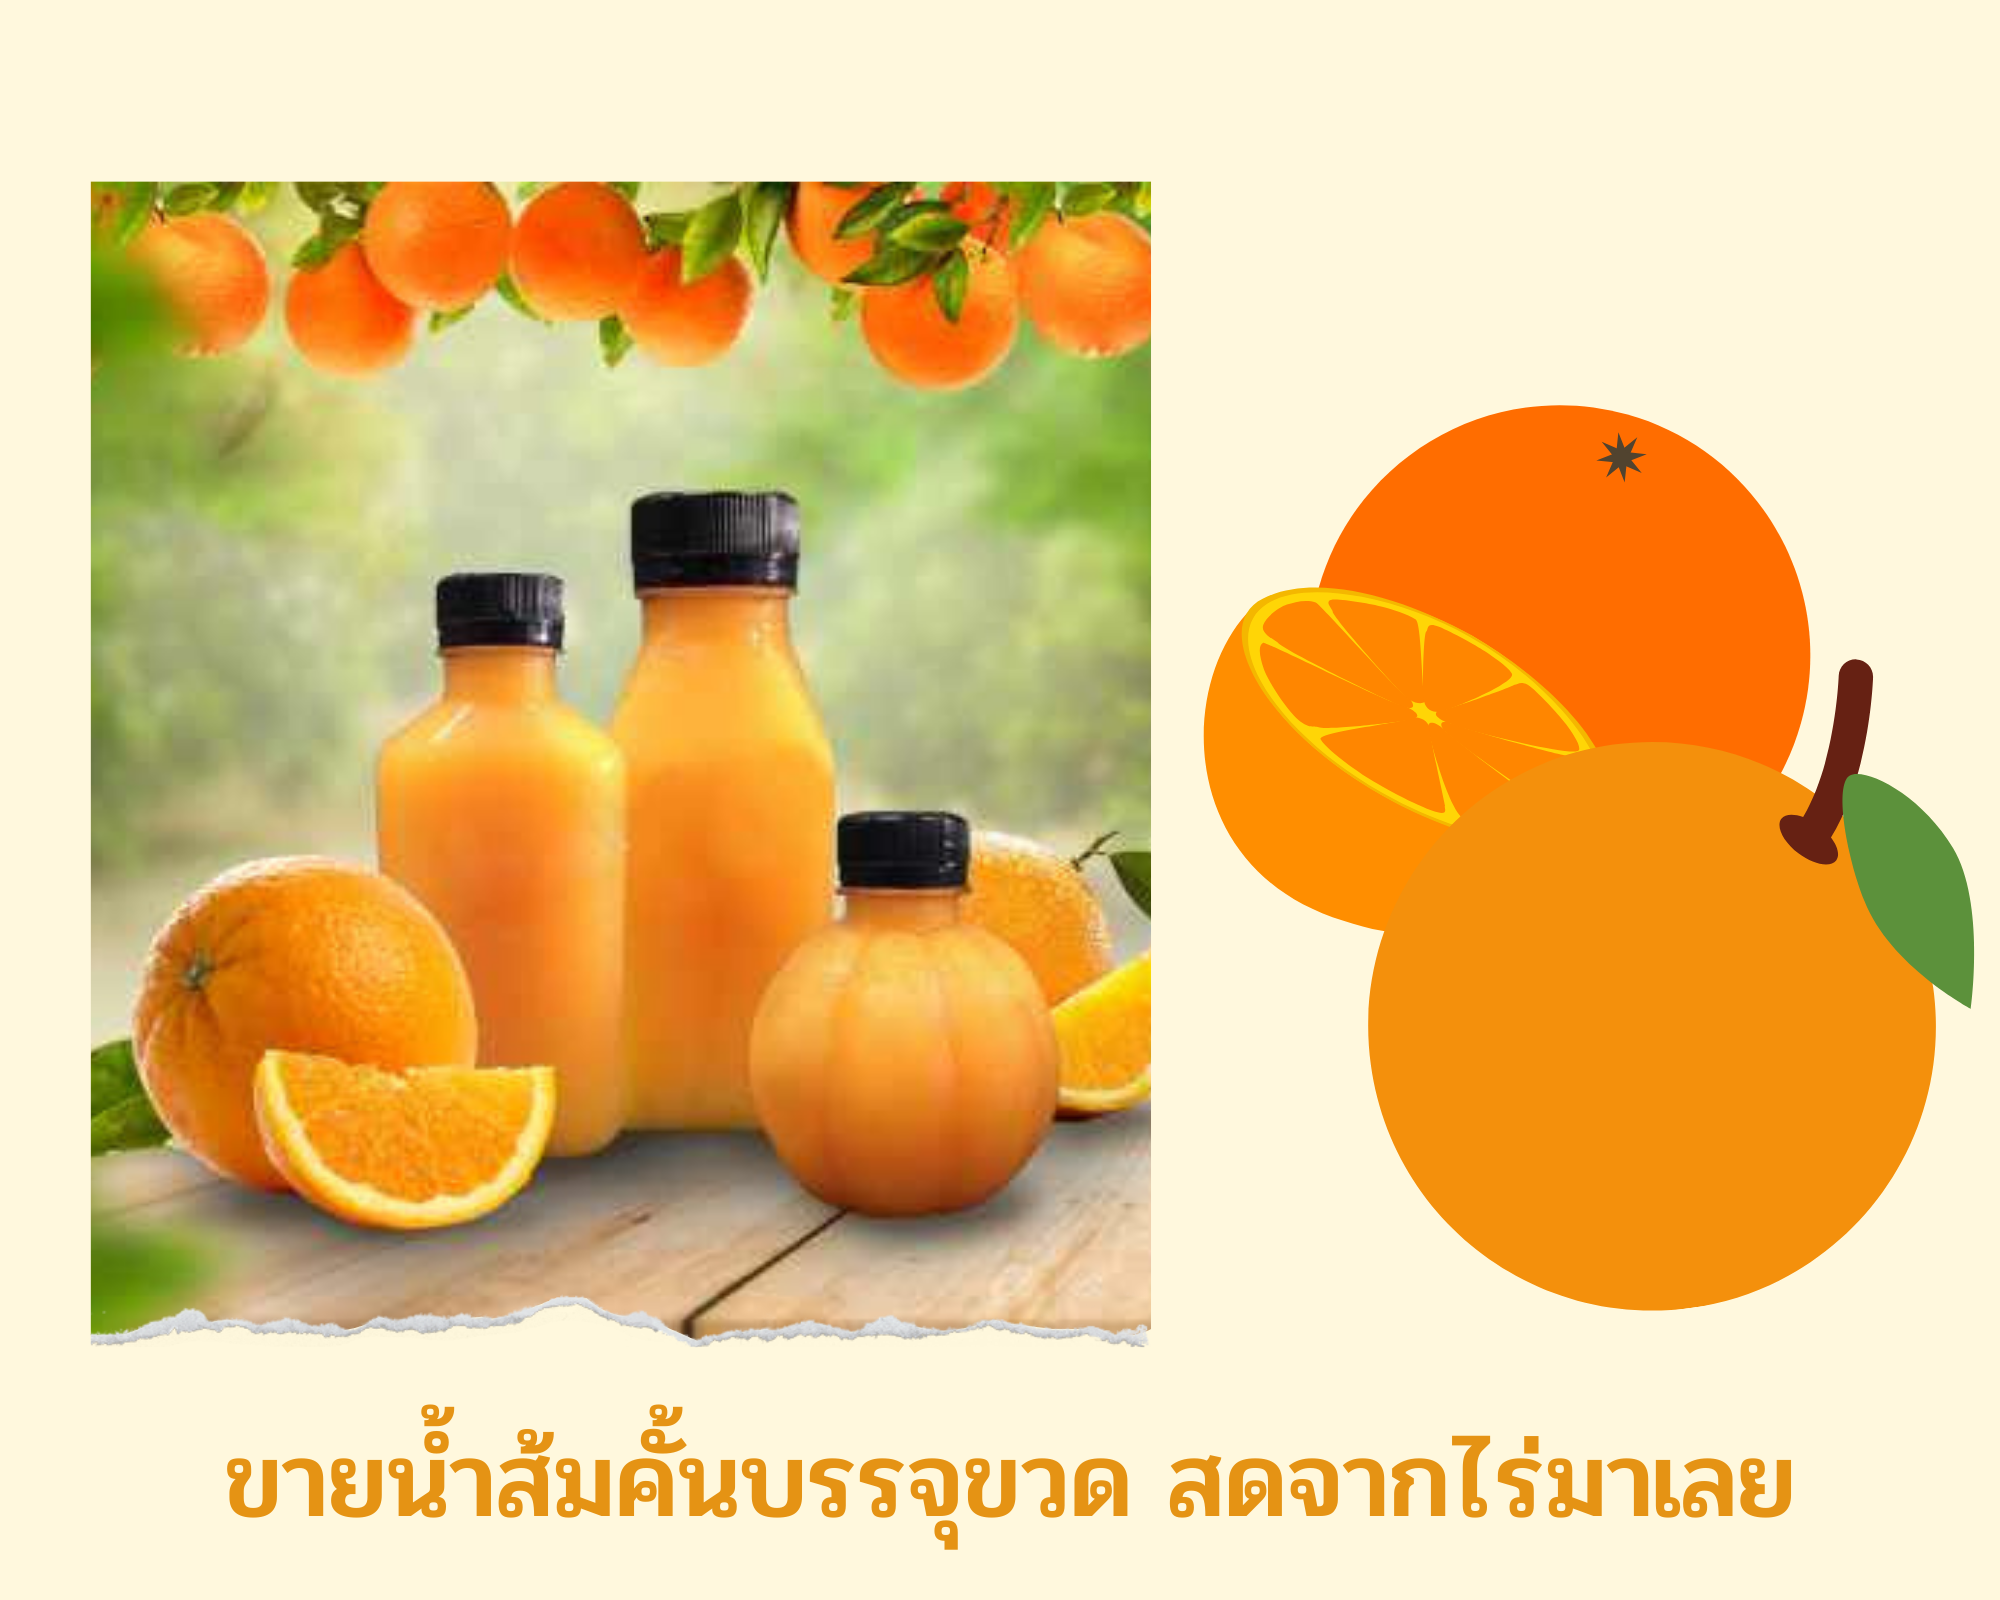 ขาย น้ำส้มคั้น บรรจุขวด สดจากไร่ มาเลย เราคุ้นเคยกันมานาน กับน้ำส้มคั้นสด